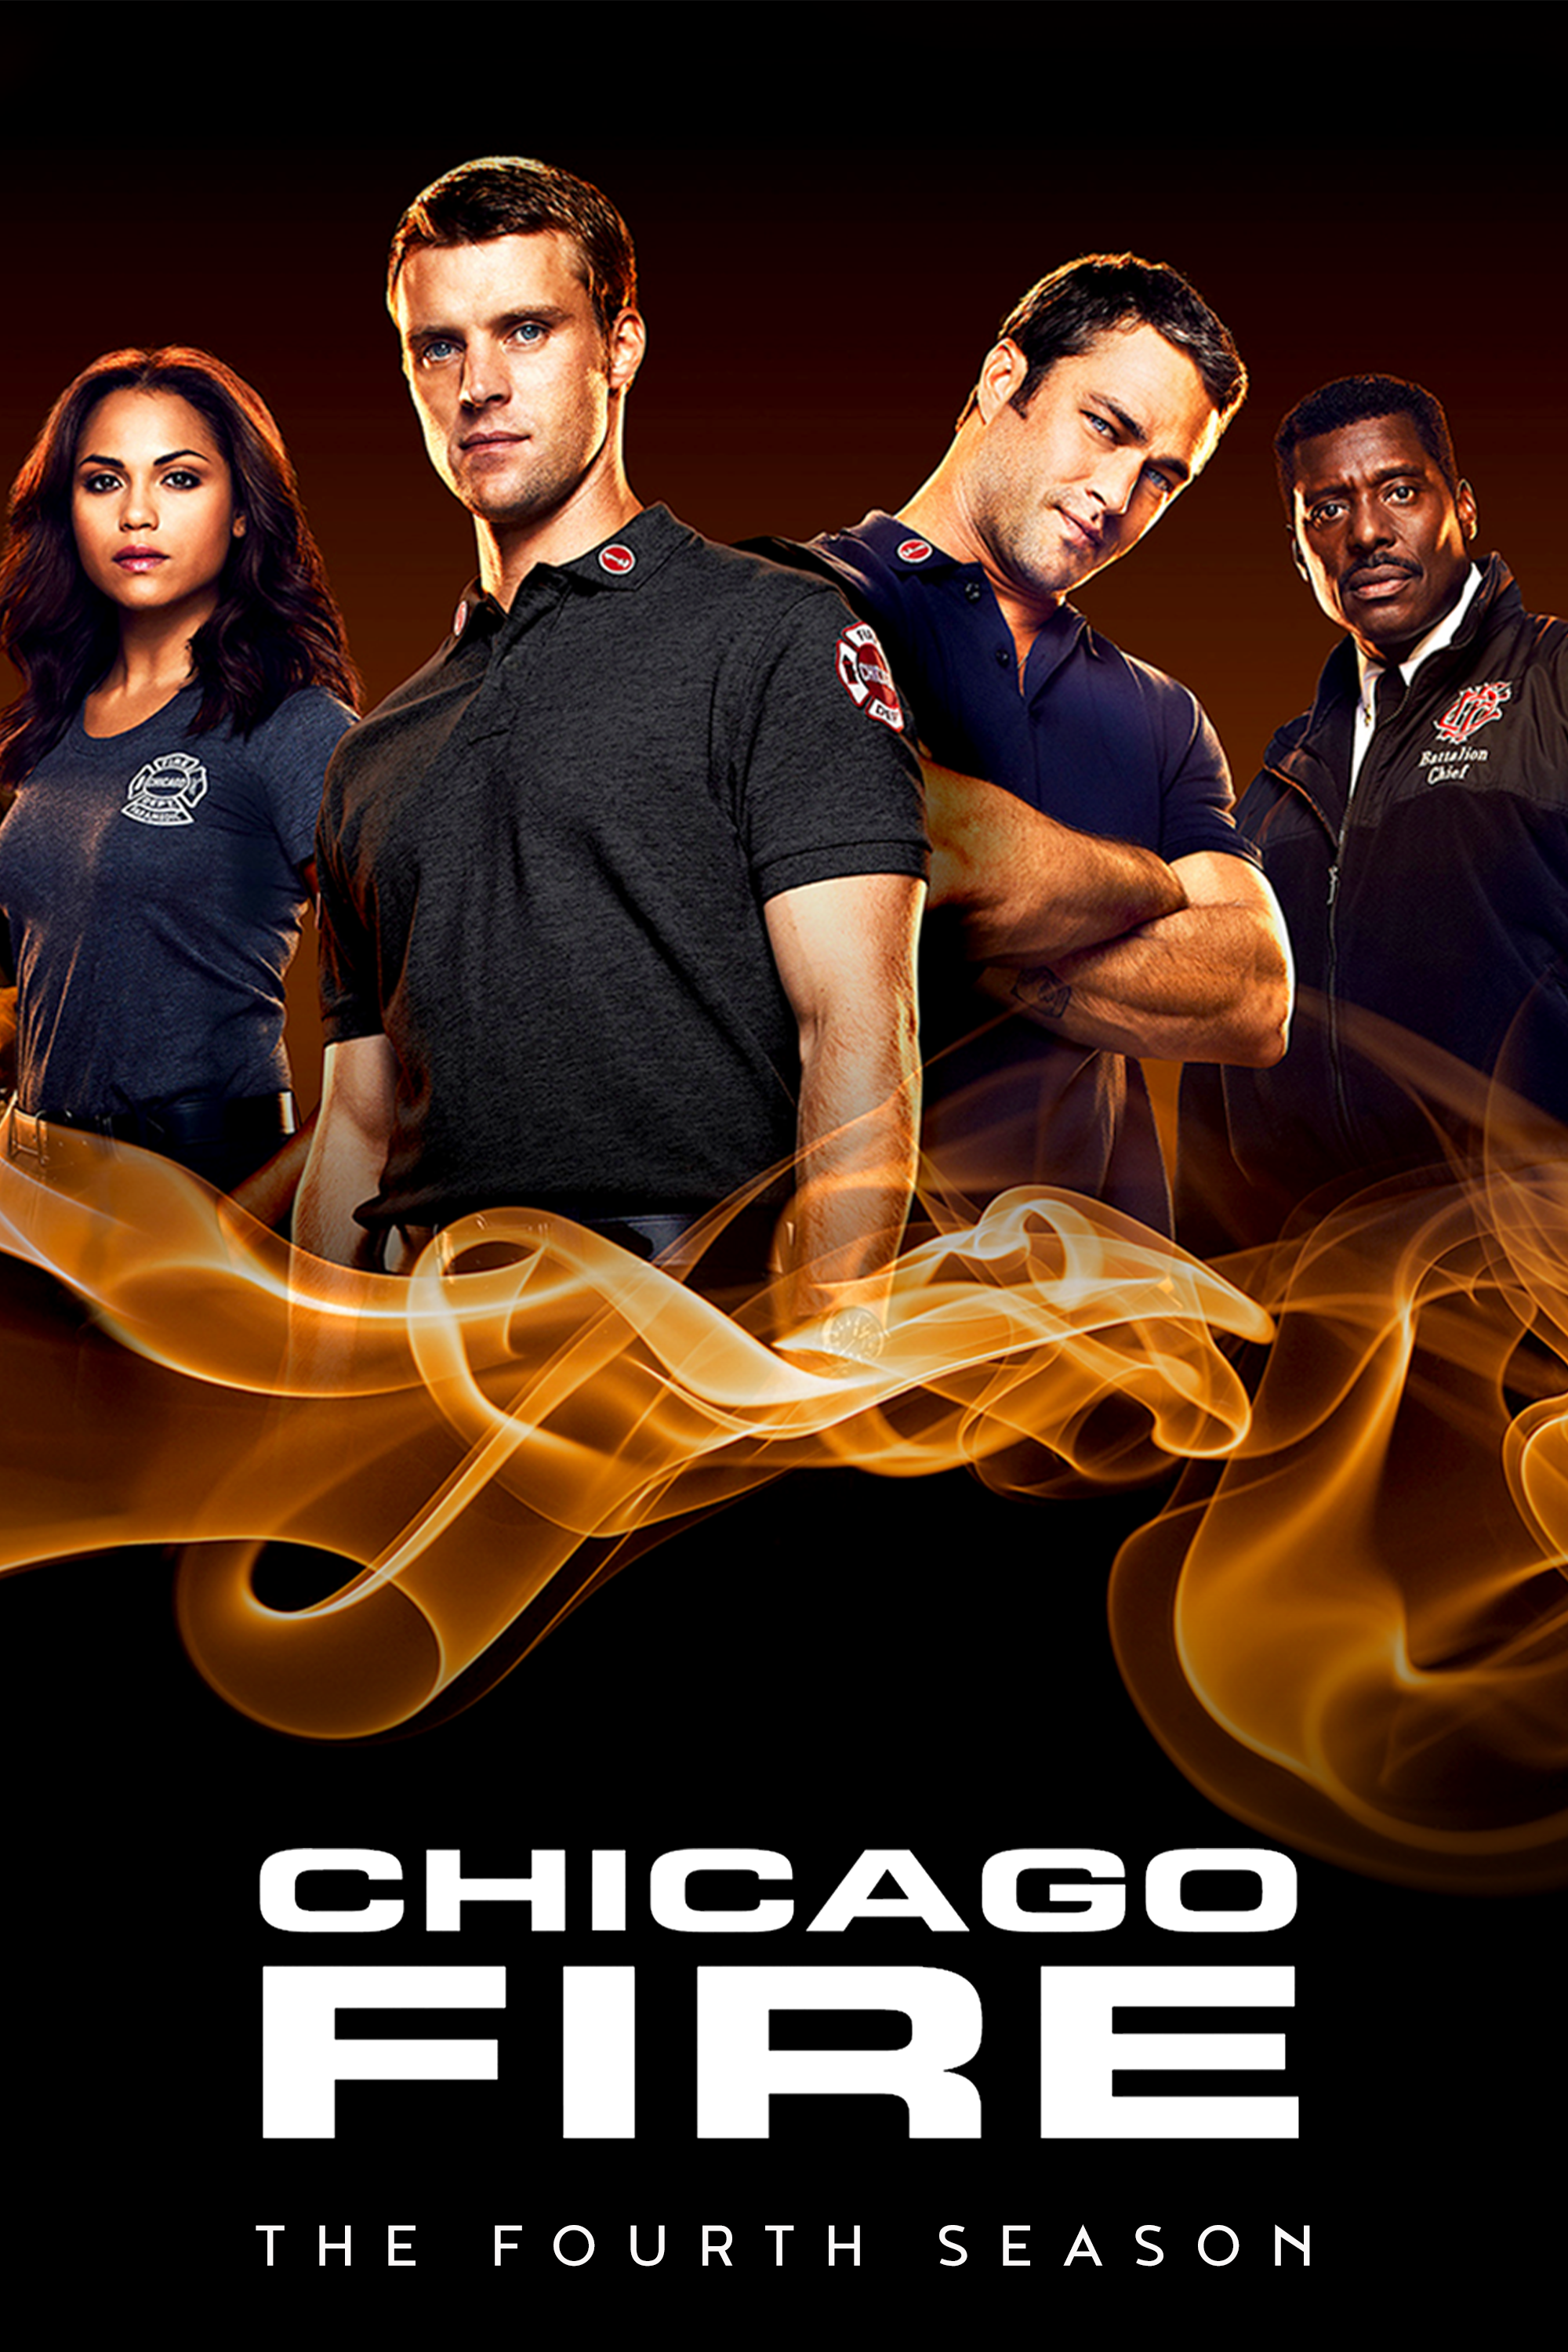 ดูหนังออนไลน์ฟรี Chicago Fire Season 4 EP.9 ชิคาโก้ ไฟร์ หน่วยดับเพลิงท้านรก ซีซั่นที่ 4 ตอนที่ 9